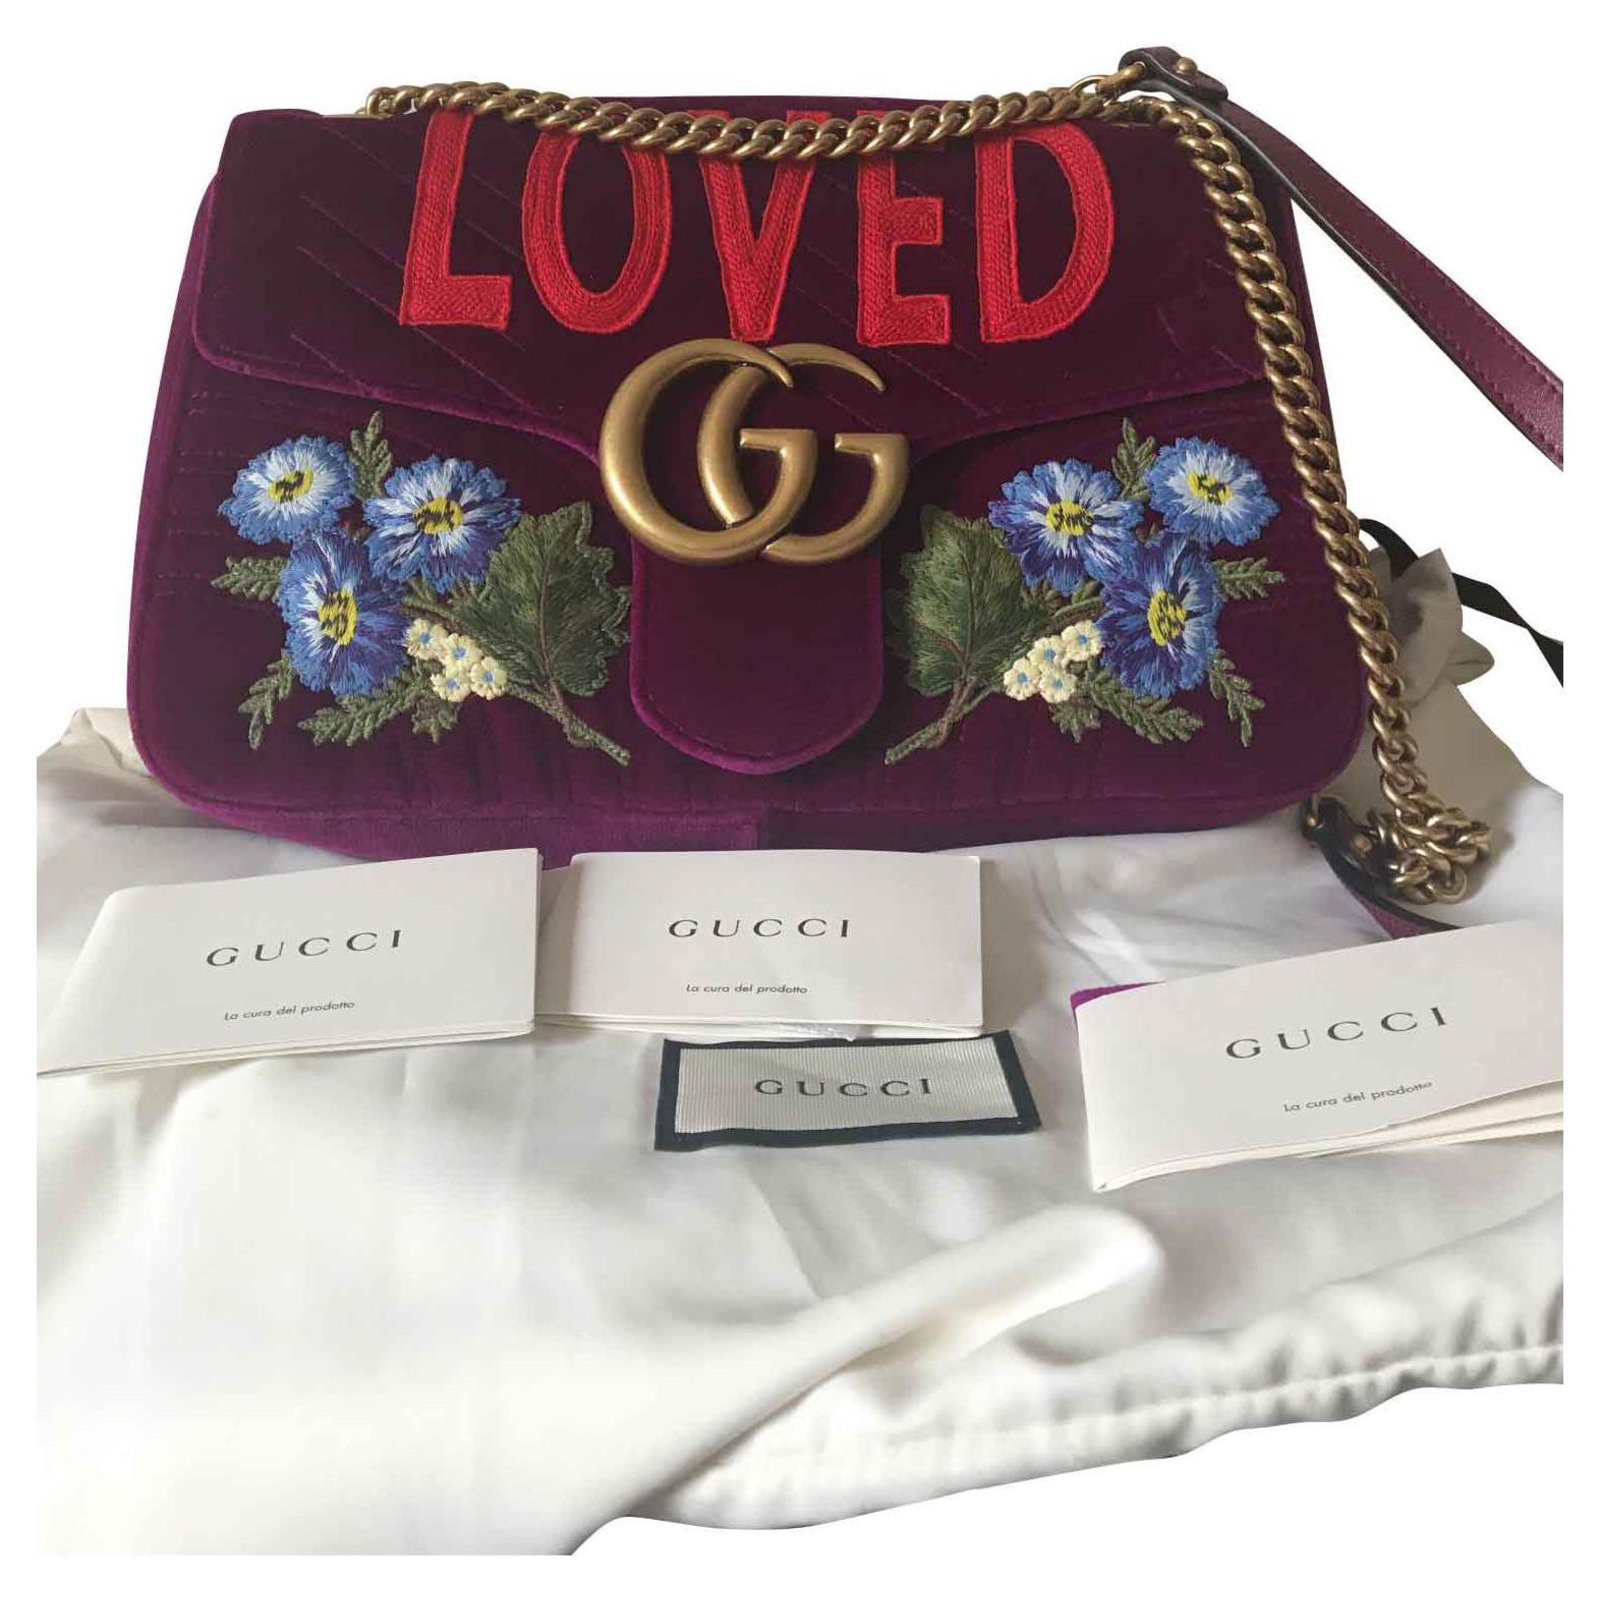 Gucci Marmont loved Handbags Velvet 